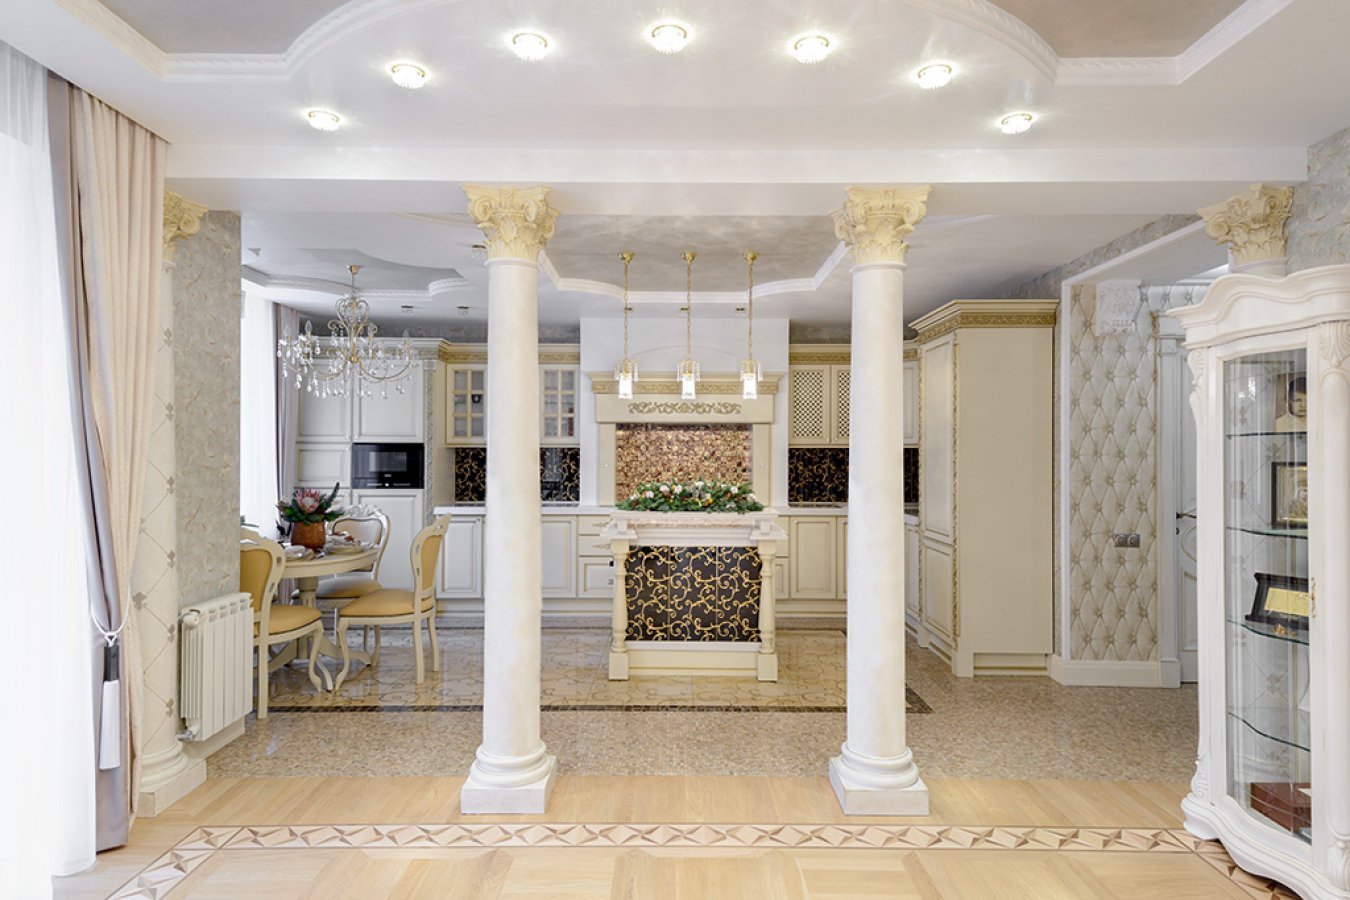 Колонны в интерьере гостиной, зала: дизайн в доме, гипсовые фальш-колонны - 39 фото